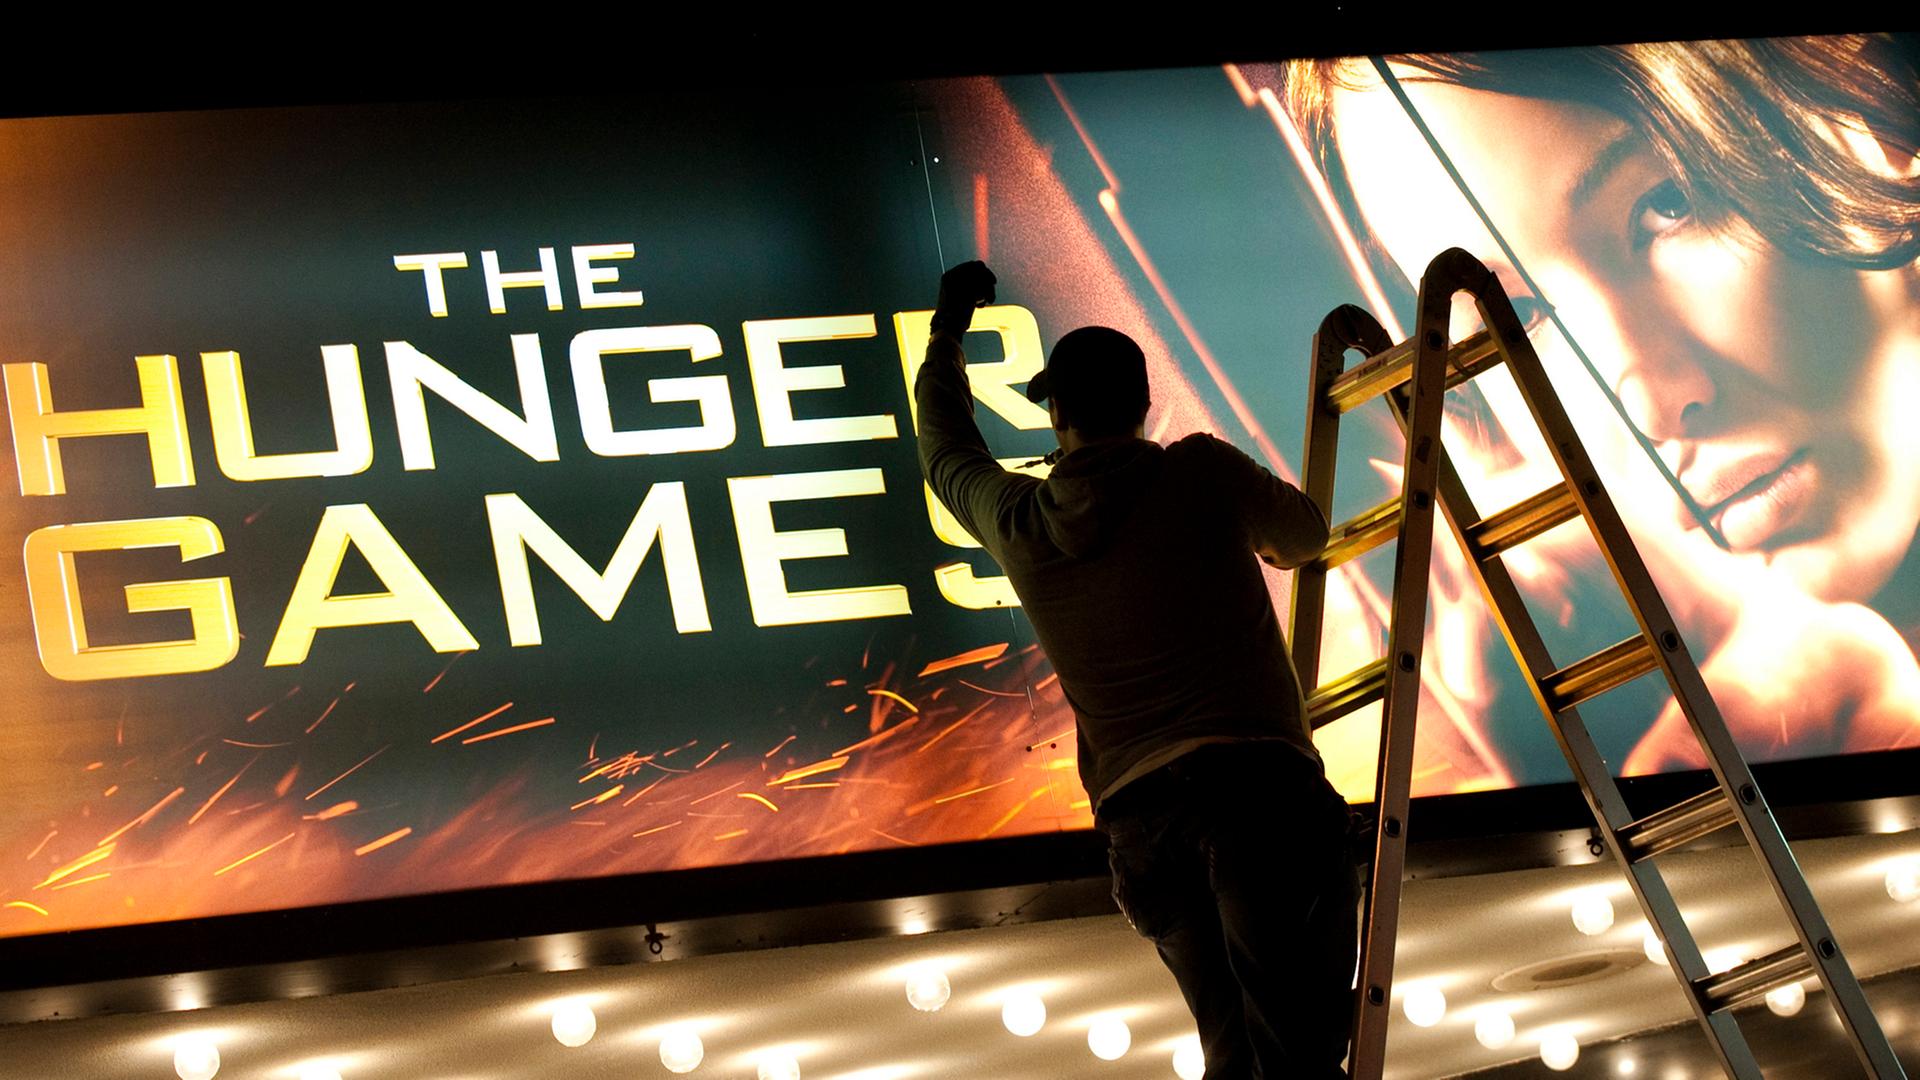 Werbung für den Kinofilm zum Buch: "The Hunger Games".